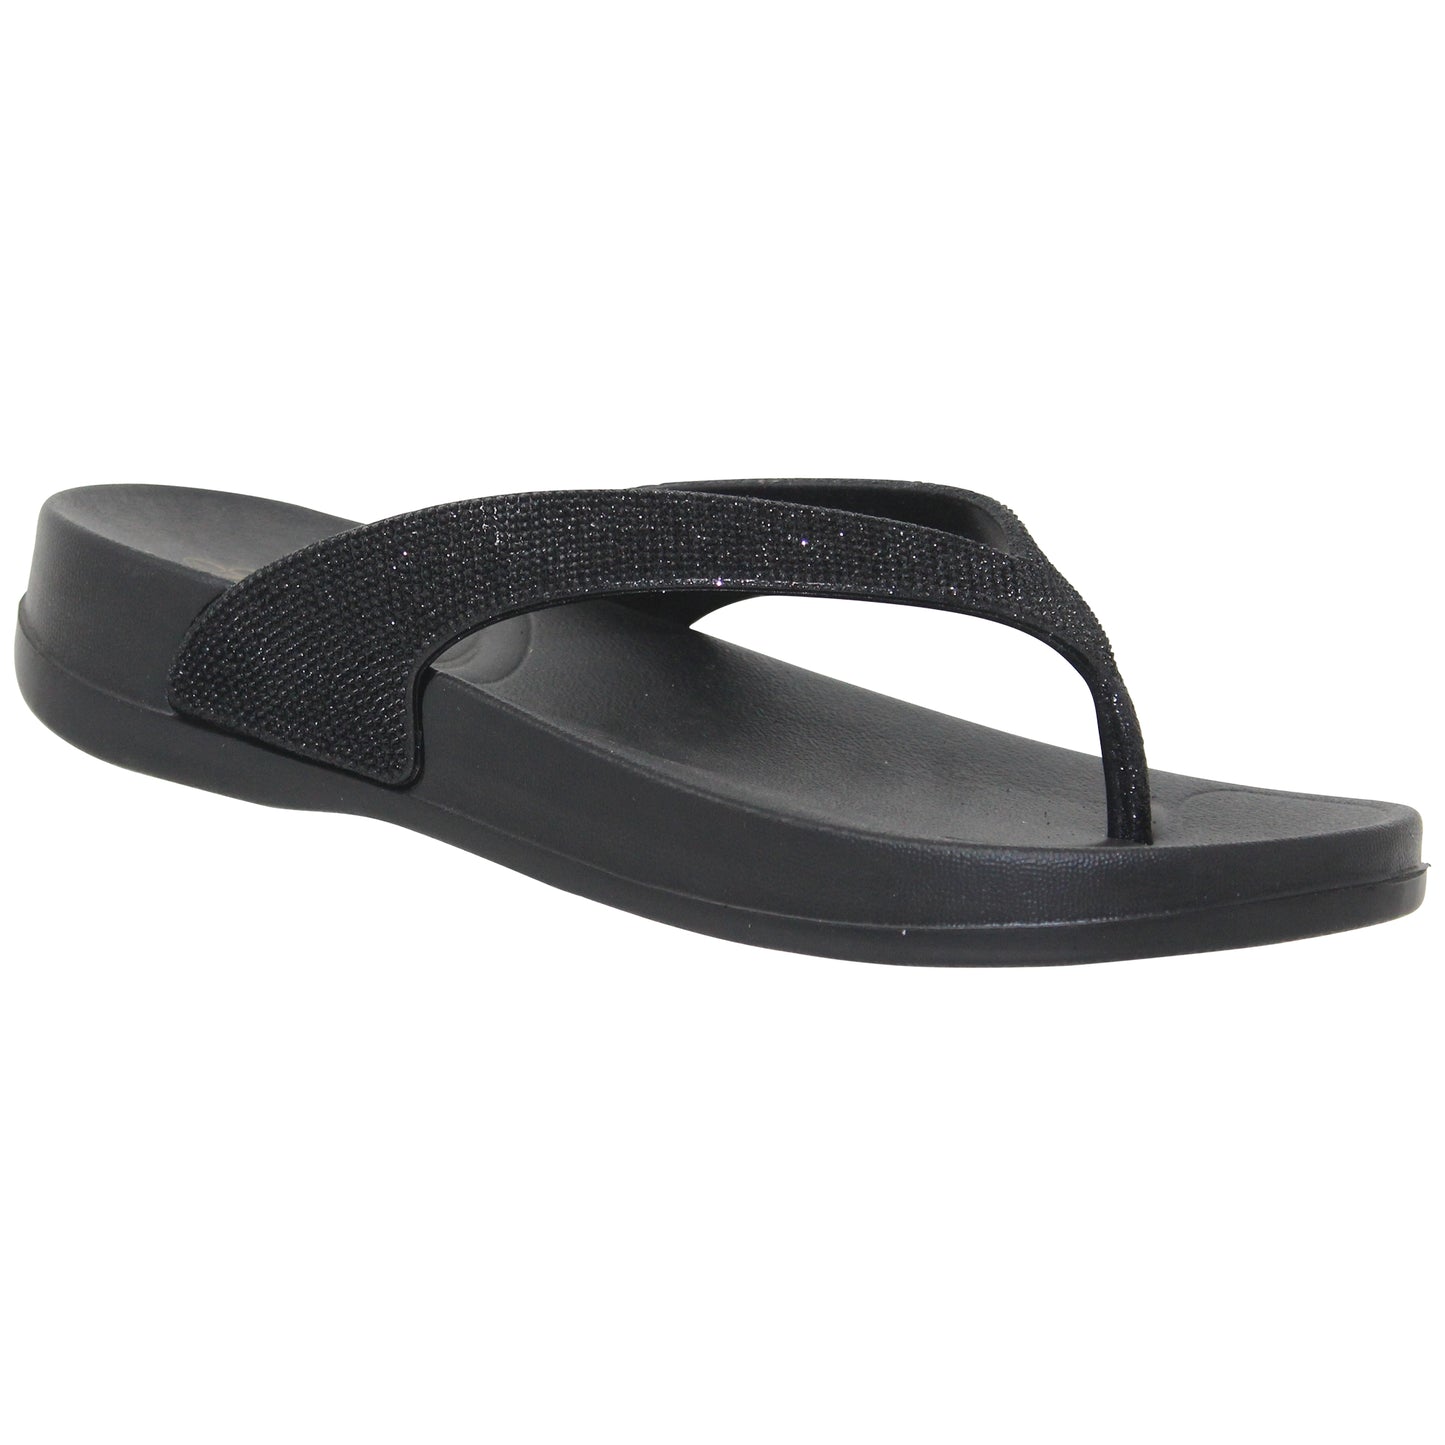 SOBEYO Womens Flat Platform Sandals Light-Weight Glitter Flip Flop Thong Black